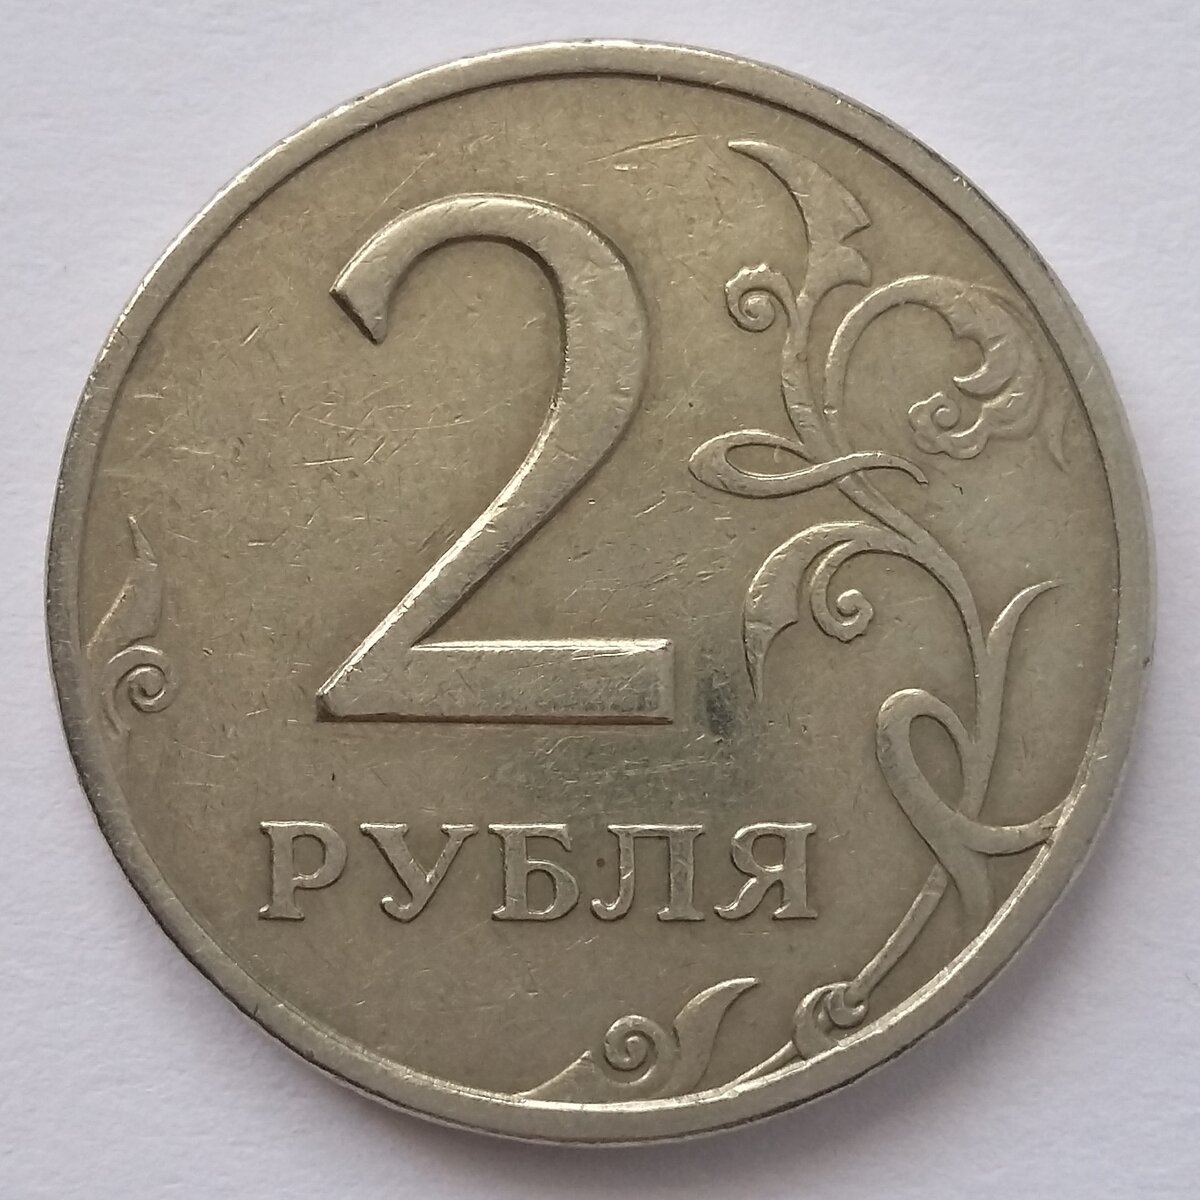 На столе лежат две монеты в сумме 3 рубля